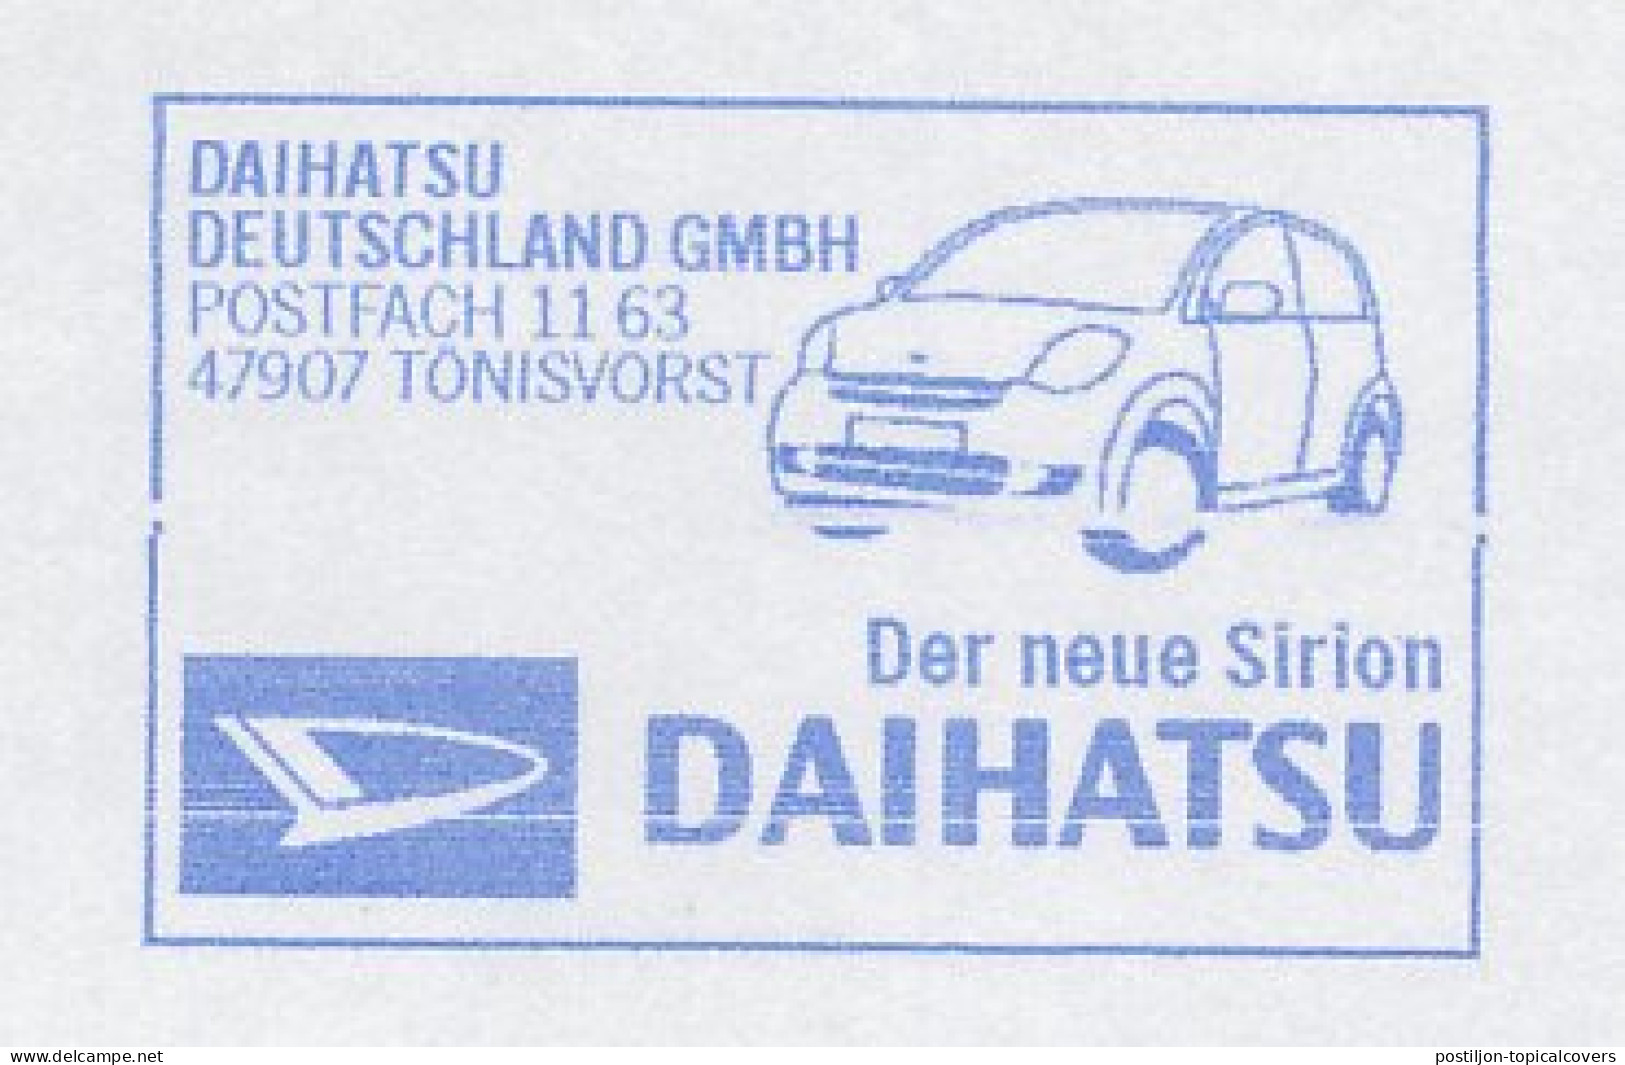 Meter Cut Germany 2009 Car - Daihatsu - Autos